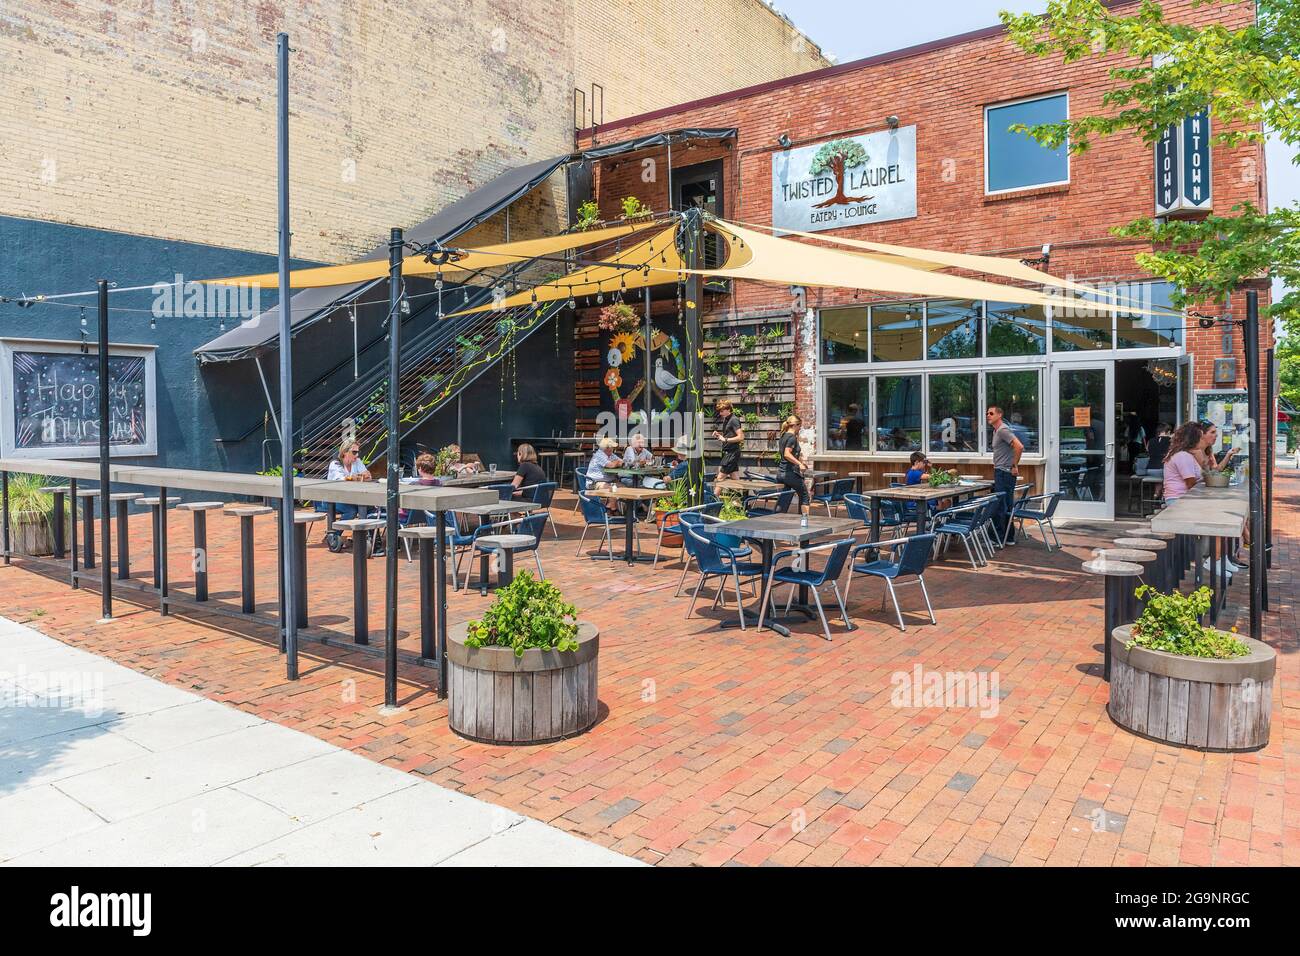 ASHEVILLE, Caroline du Nord, USA-22 JUILLET 2021 : l'Eatery et salon Twisted Laurel, où vous pourrez vous asseoir à l'extérieur avec vos clients par beau temps. Banque D'Images